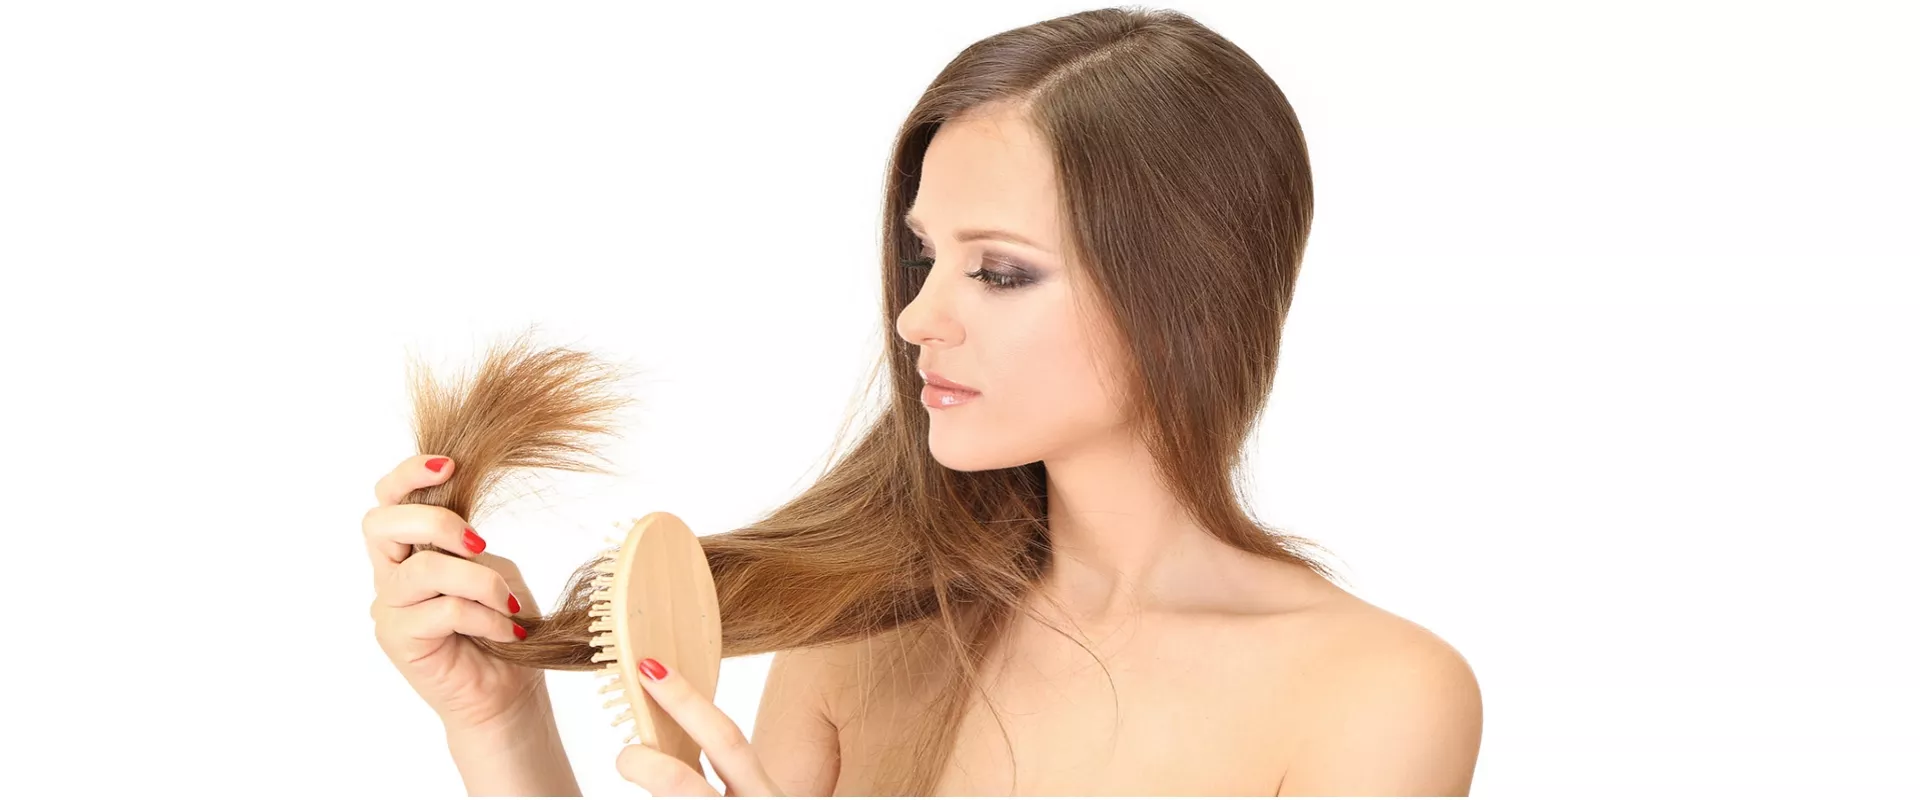 5 habitos terriveis que as mulheres tem que detonam o cabelo